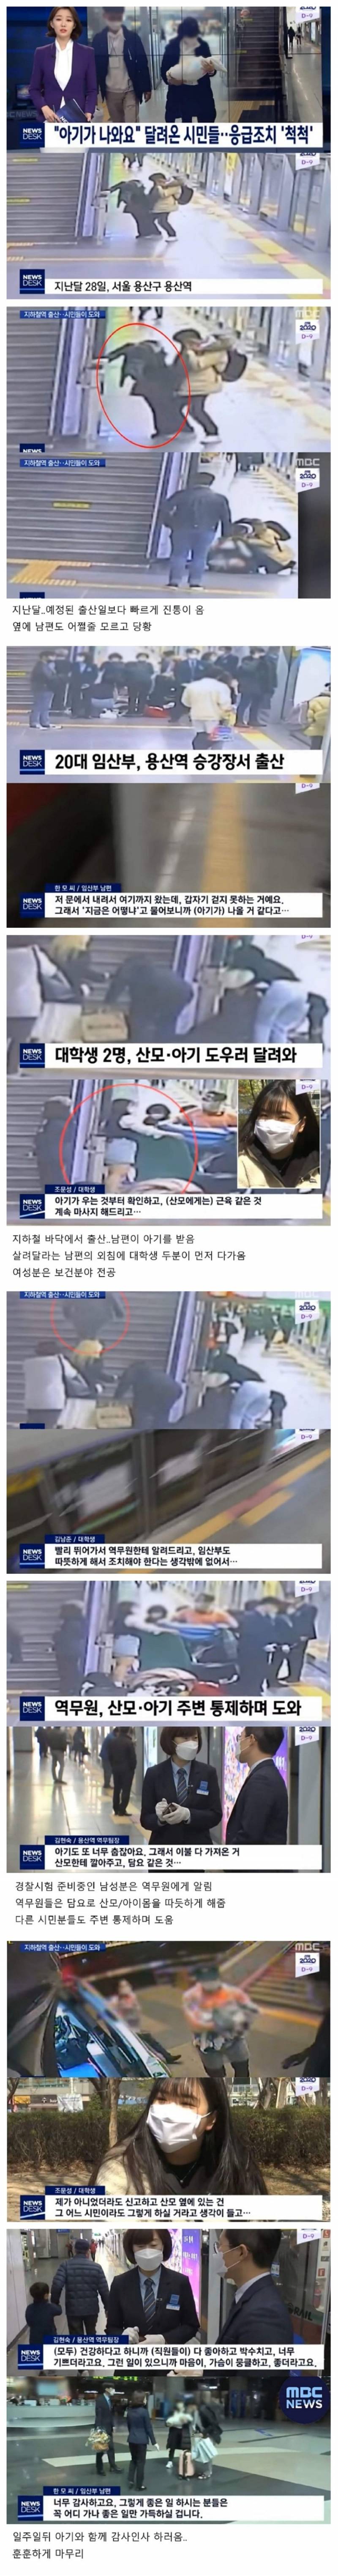 지하철에서 출산한 산모 응급처치한 시민들.jpg | 인스티즈